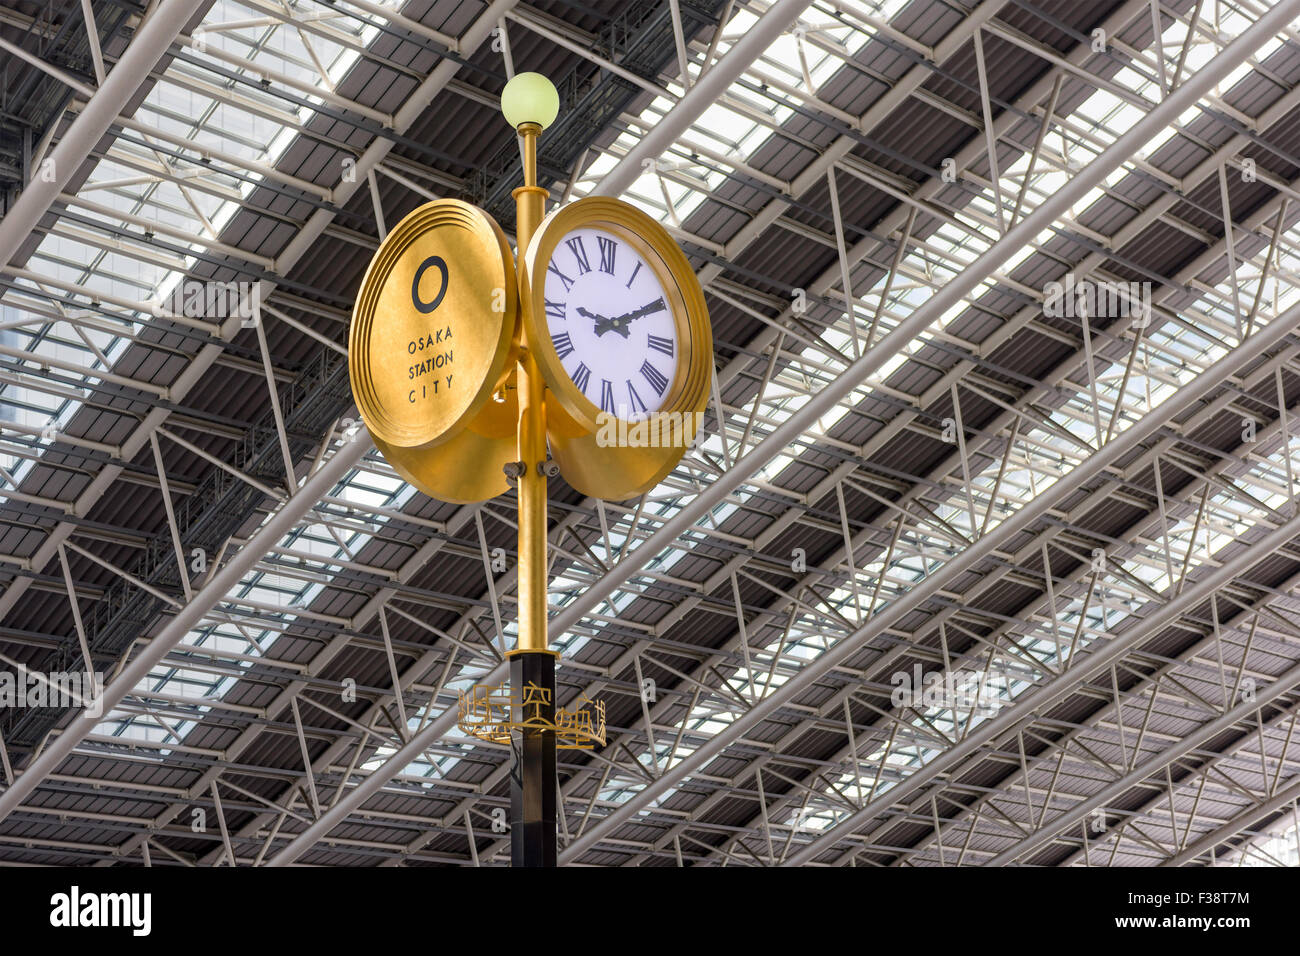 OSAKA, JAPAN - AUGUST 13, 2015: Clock in Osaka City Station's Sora no Hiroba plaza. Stock Photo